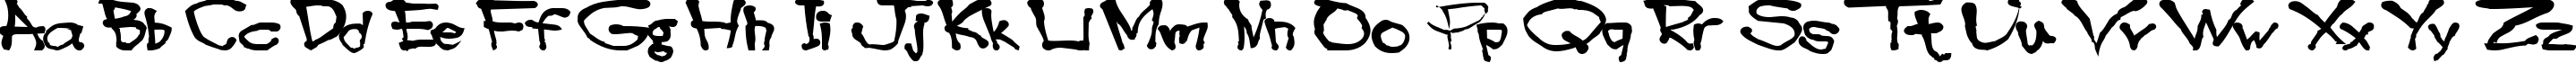 Пример написания английского алфавита шрифтом Blottooo40oz